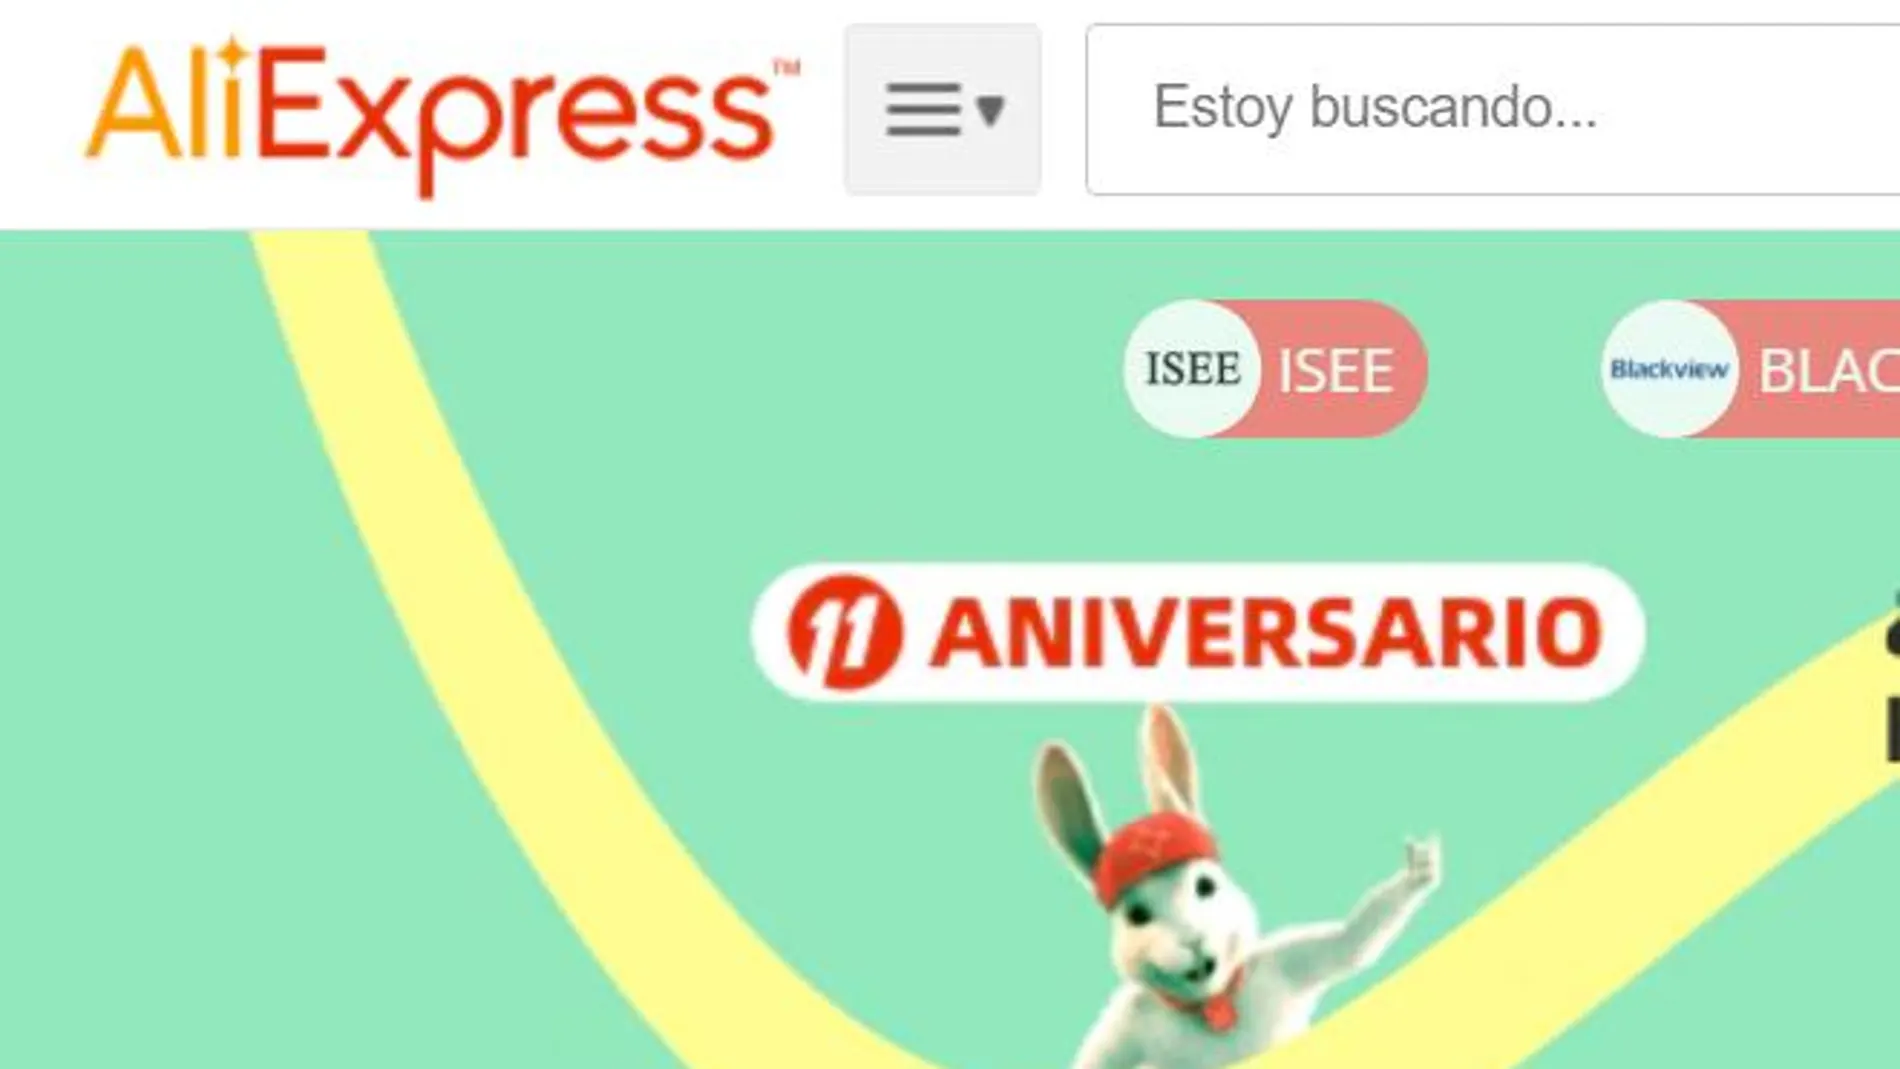 Campaña de rebajas de AliExpress por su 11 aniversario